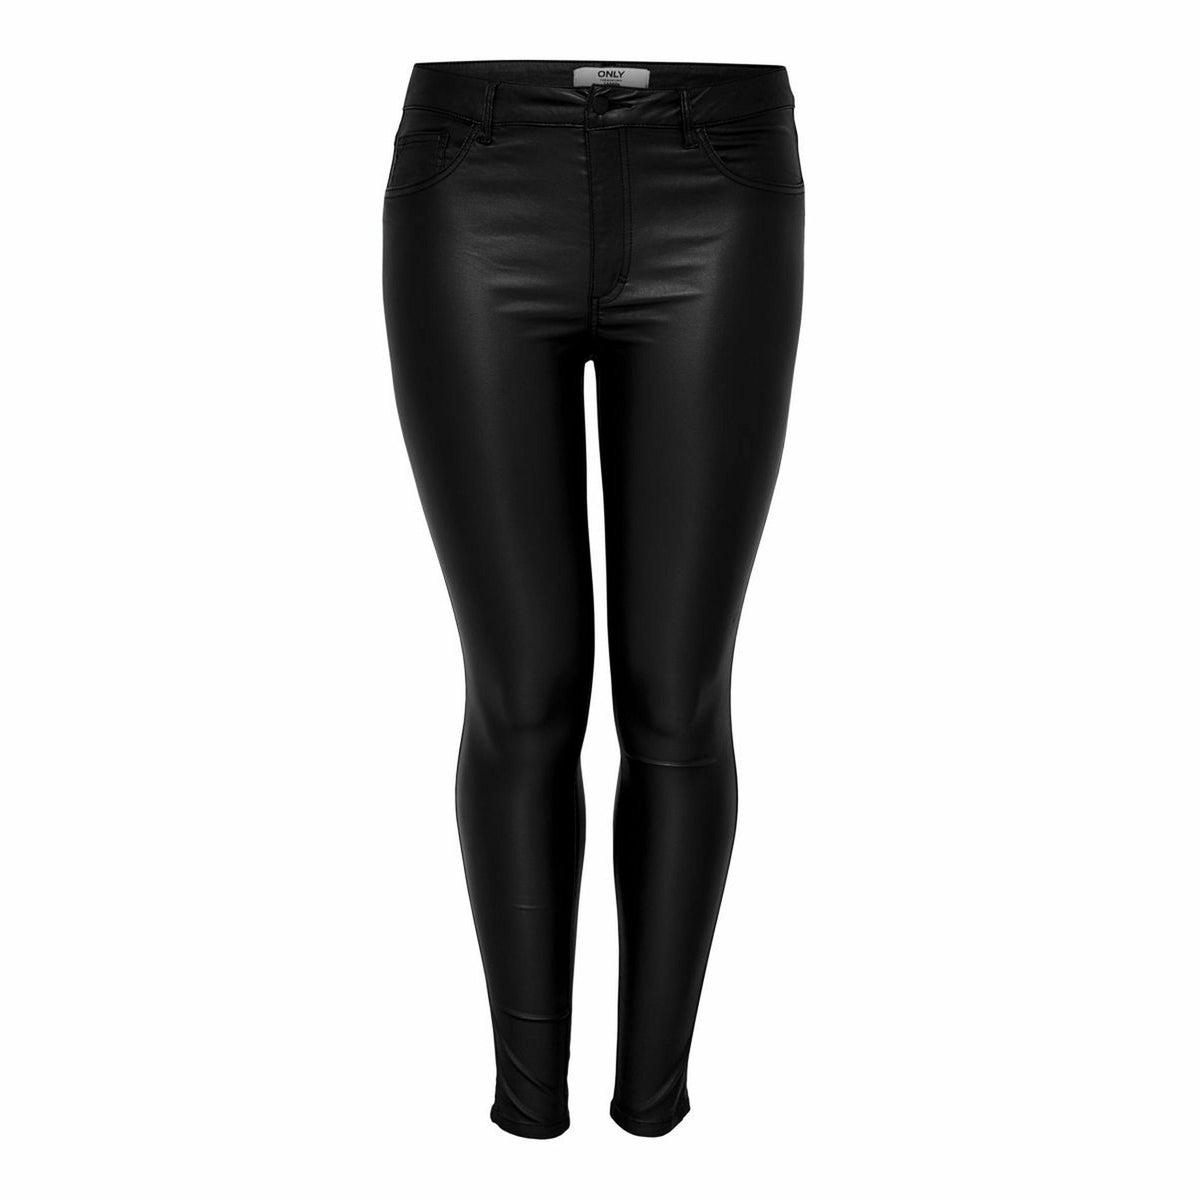 Only Carmakoma Coated Skinny Jean in Black - Wardrobe Plus